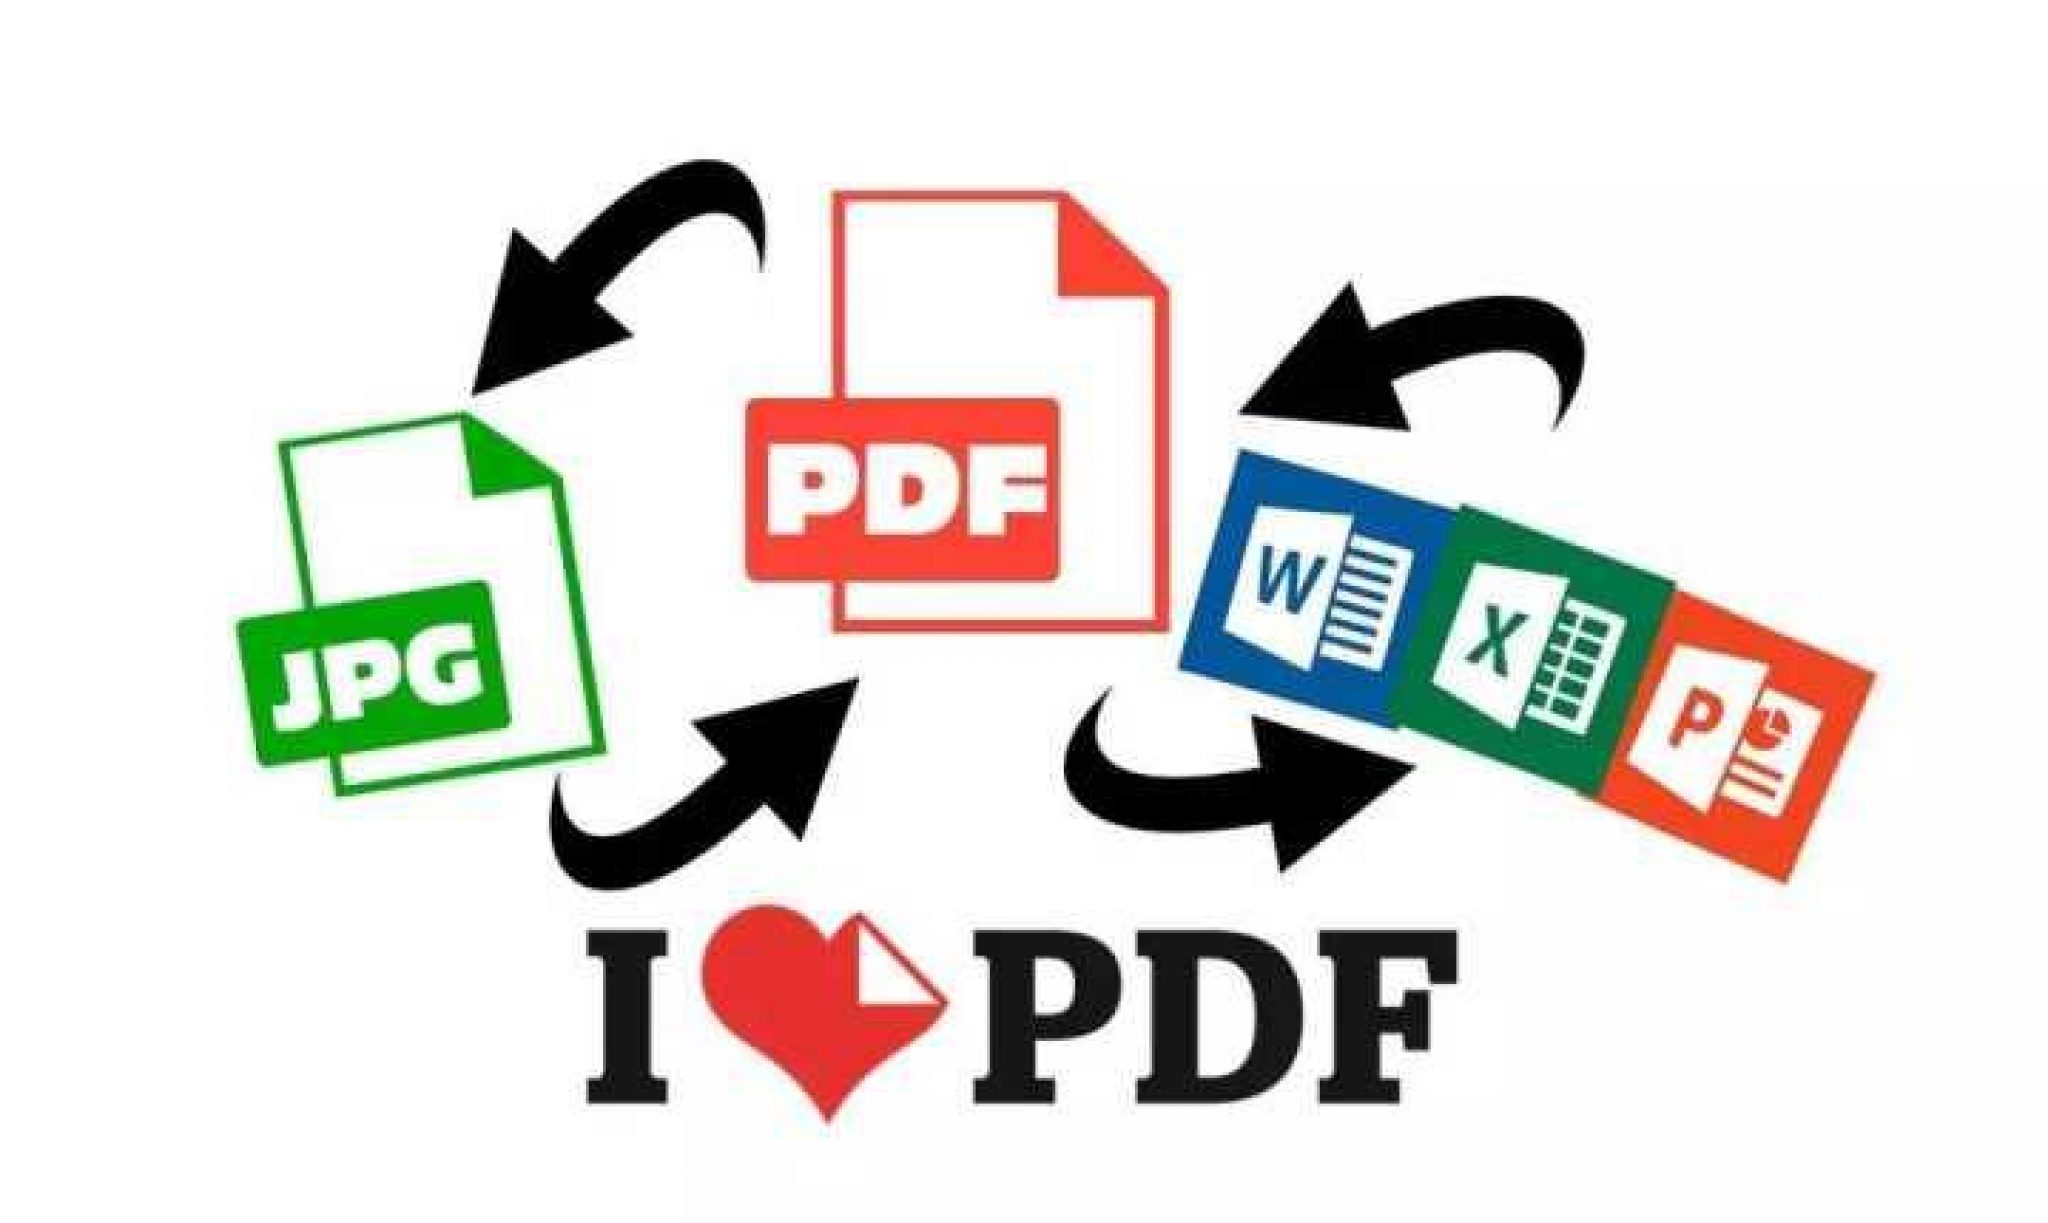 smart pdf converter download